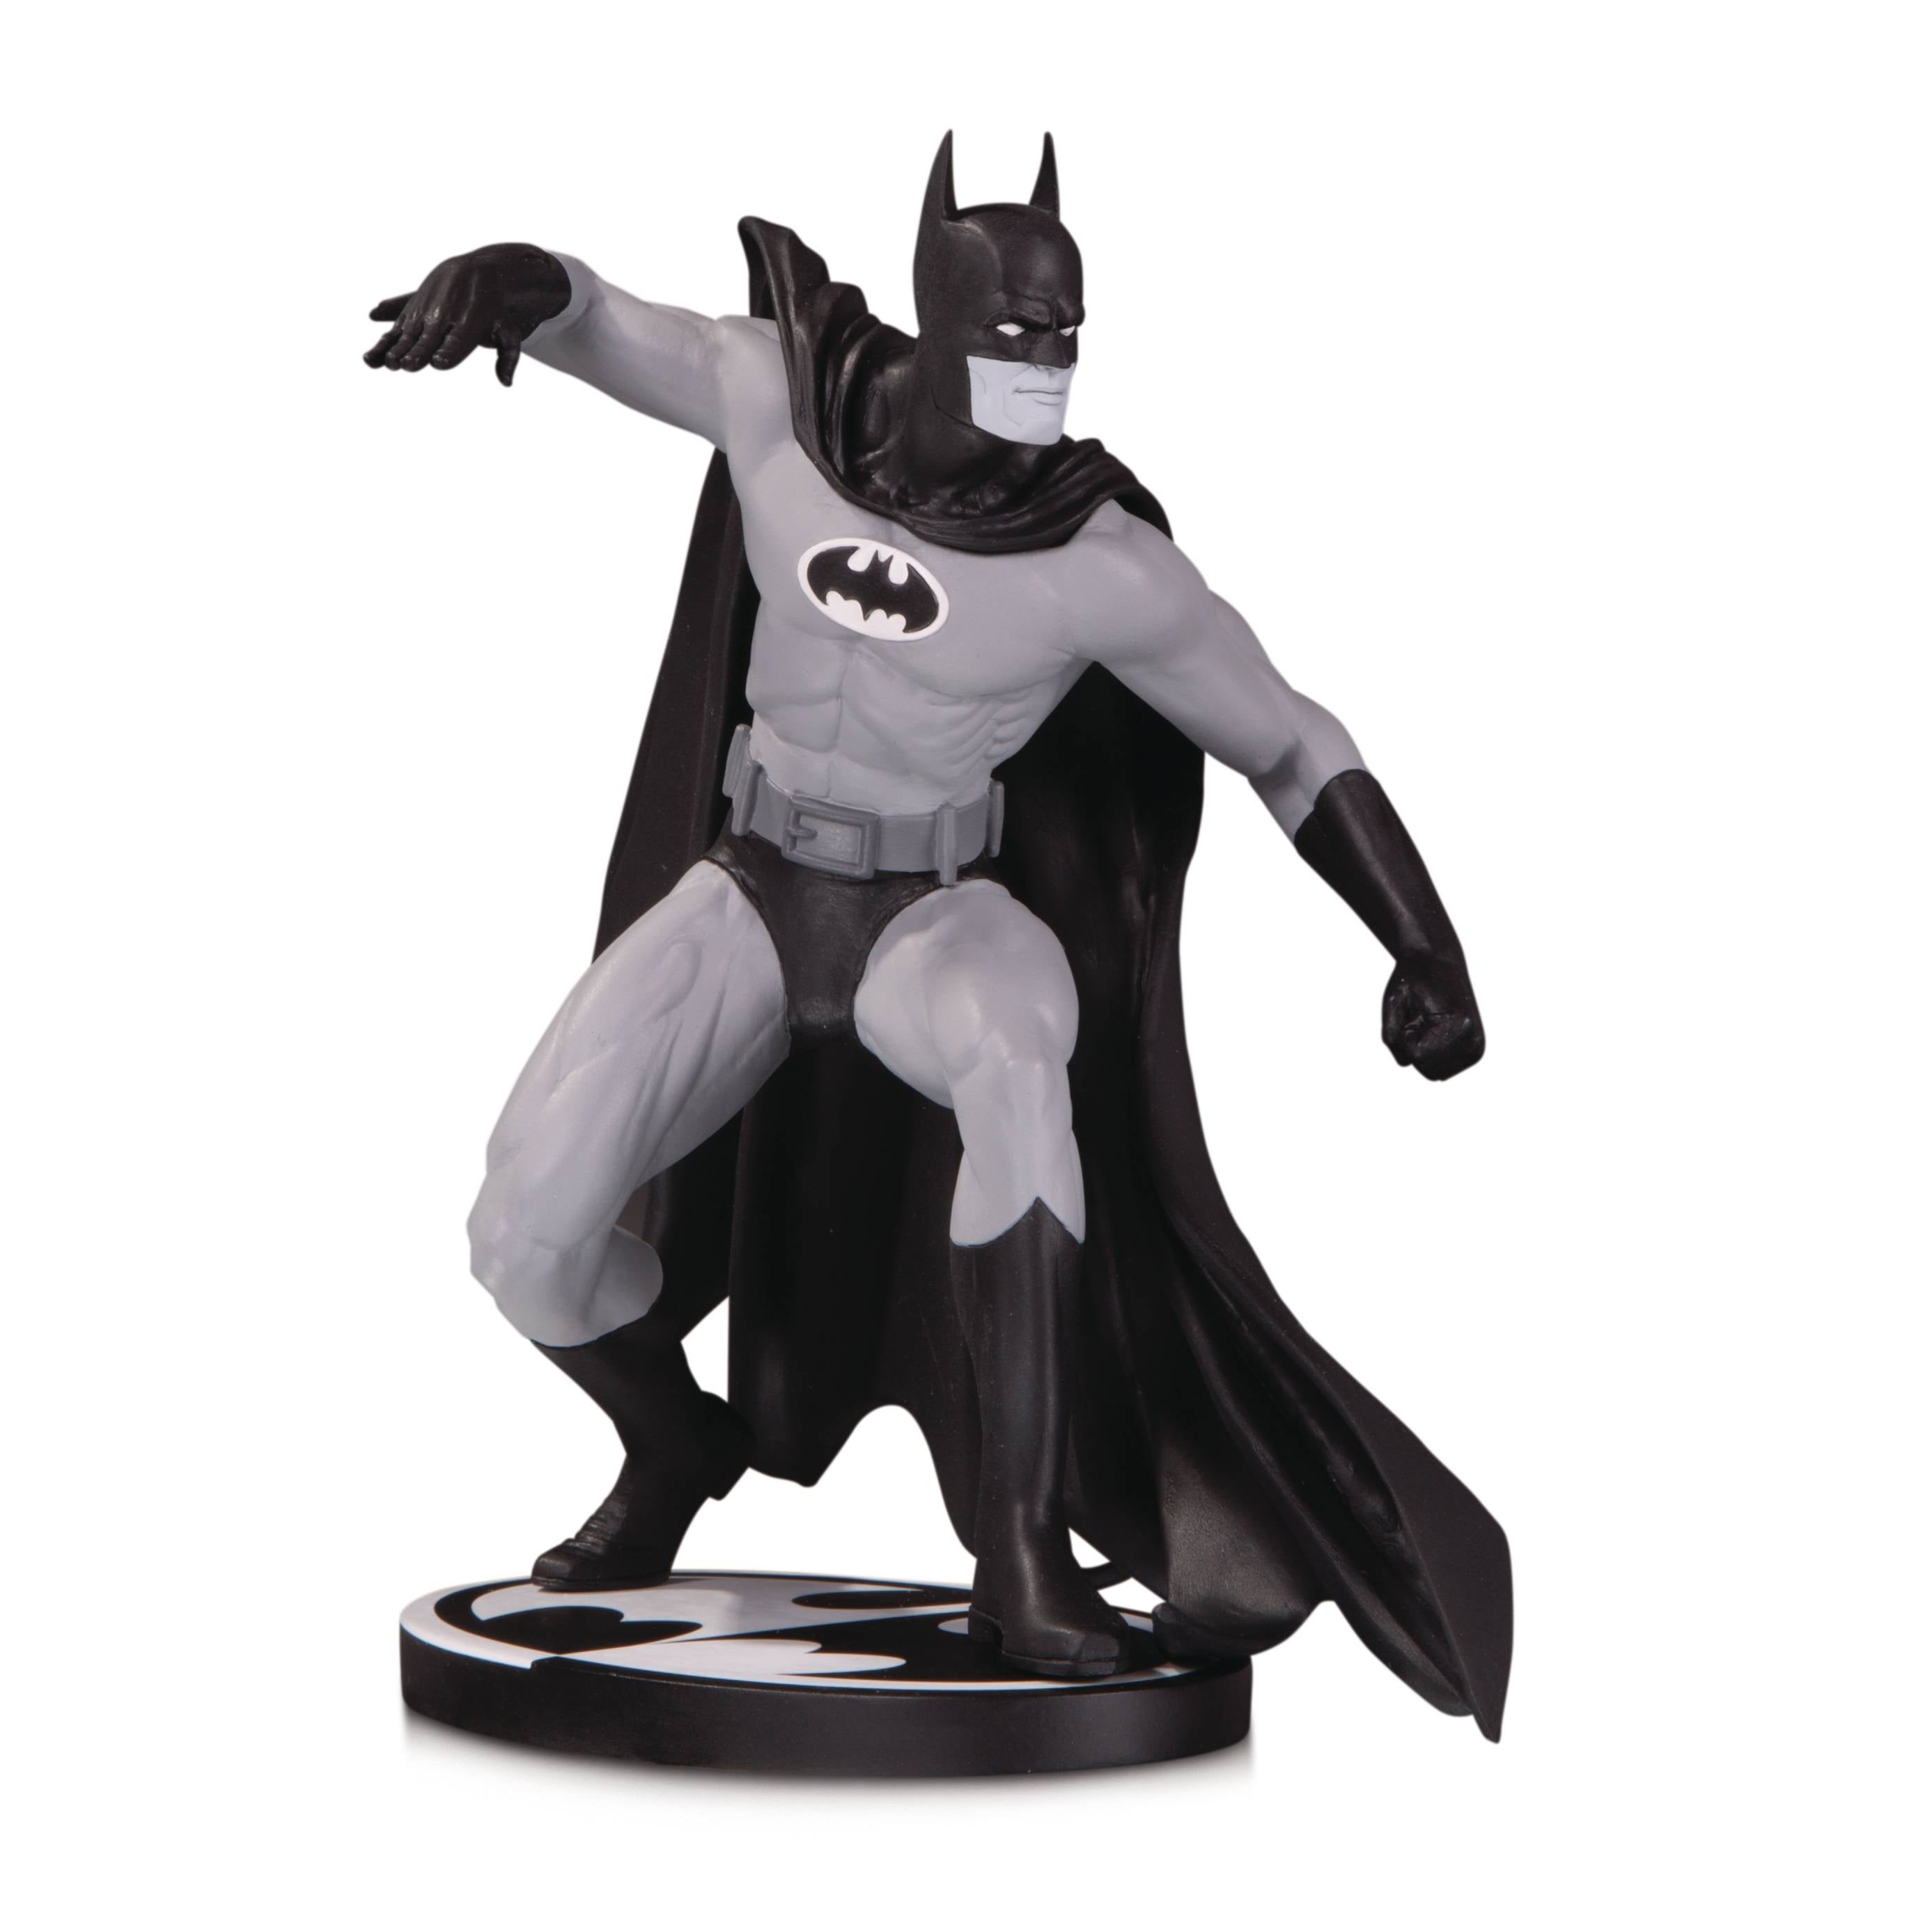 DC Comics Batman Black & White 6 inch Statue By Gene Colan